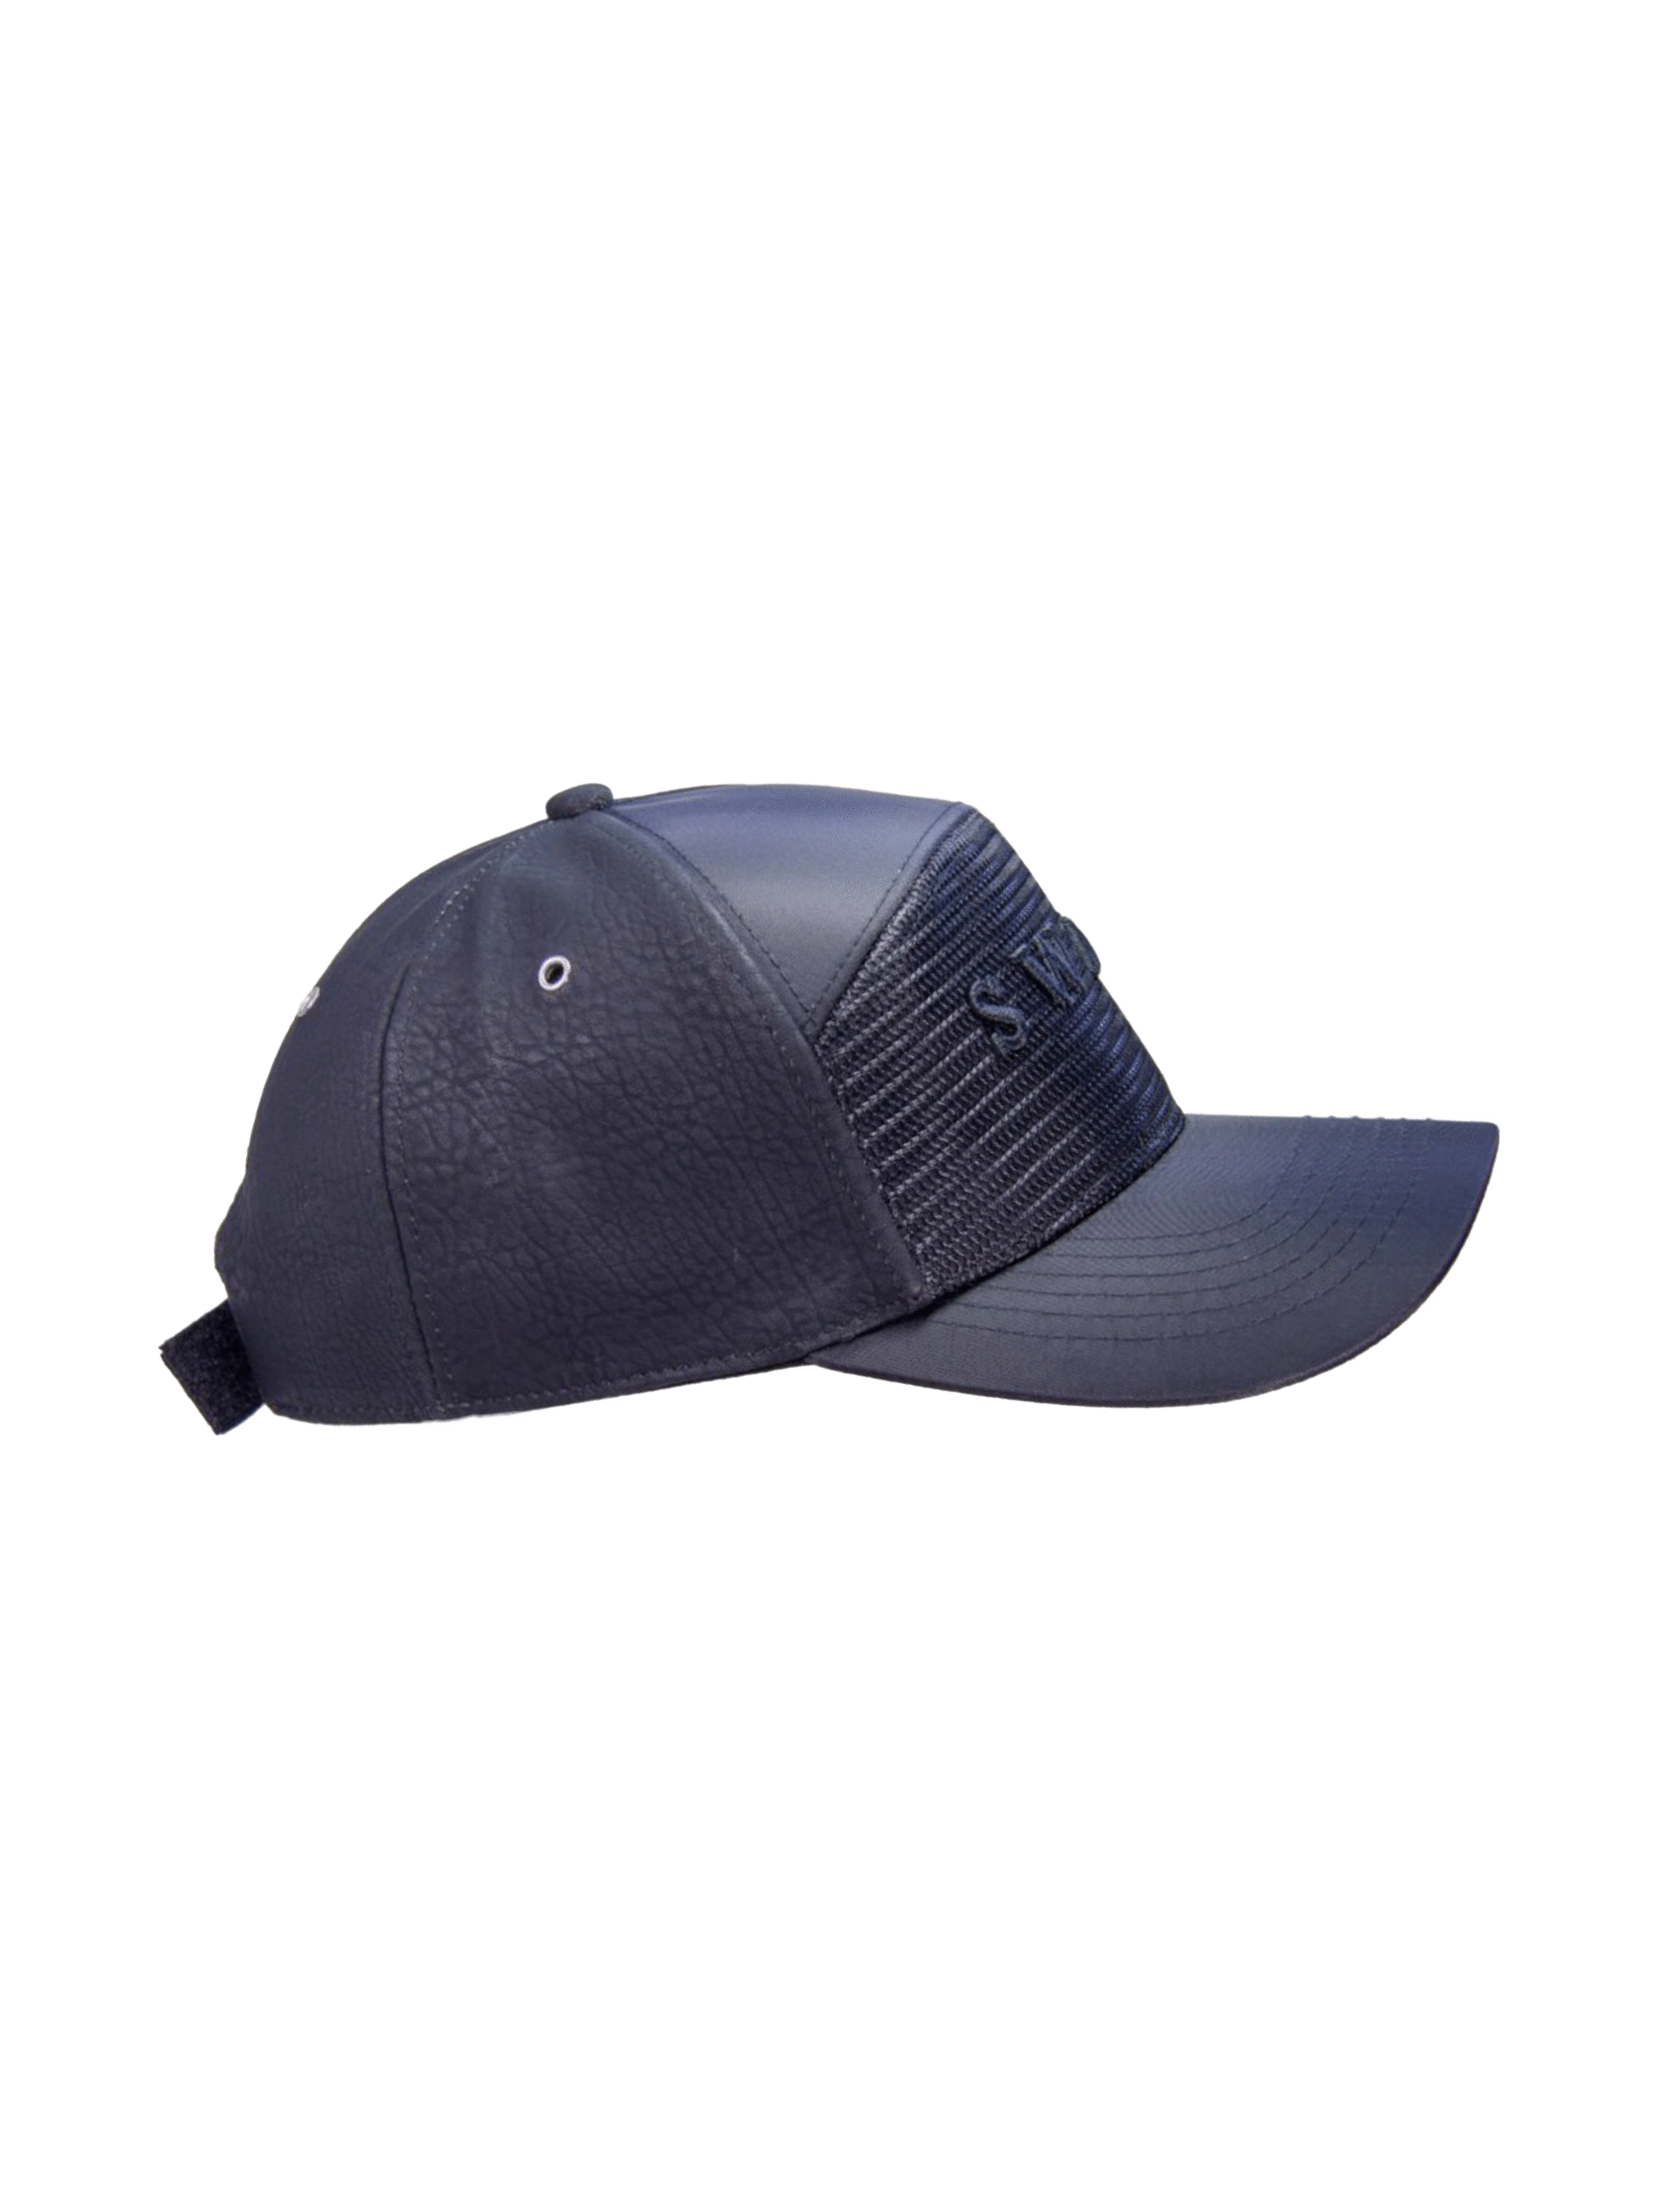 Black Leather Cap